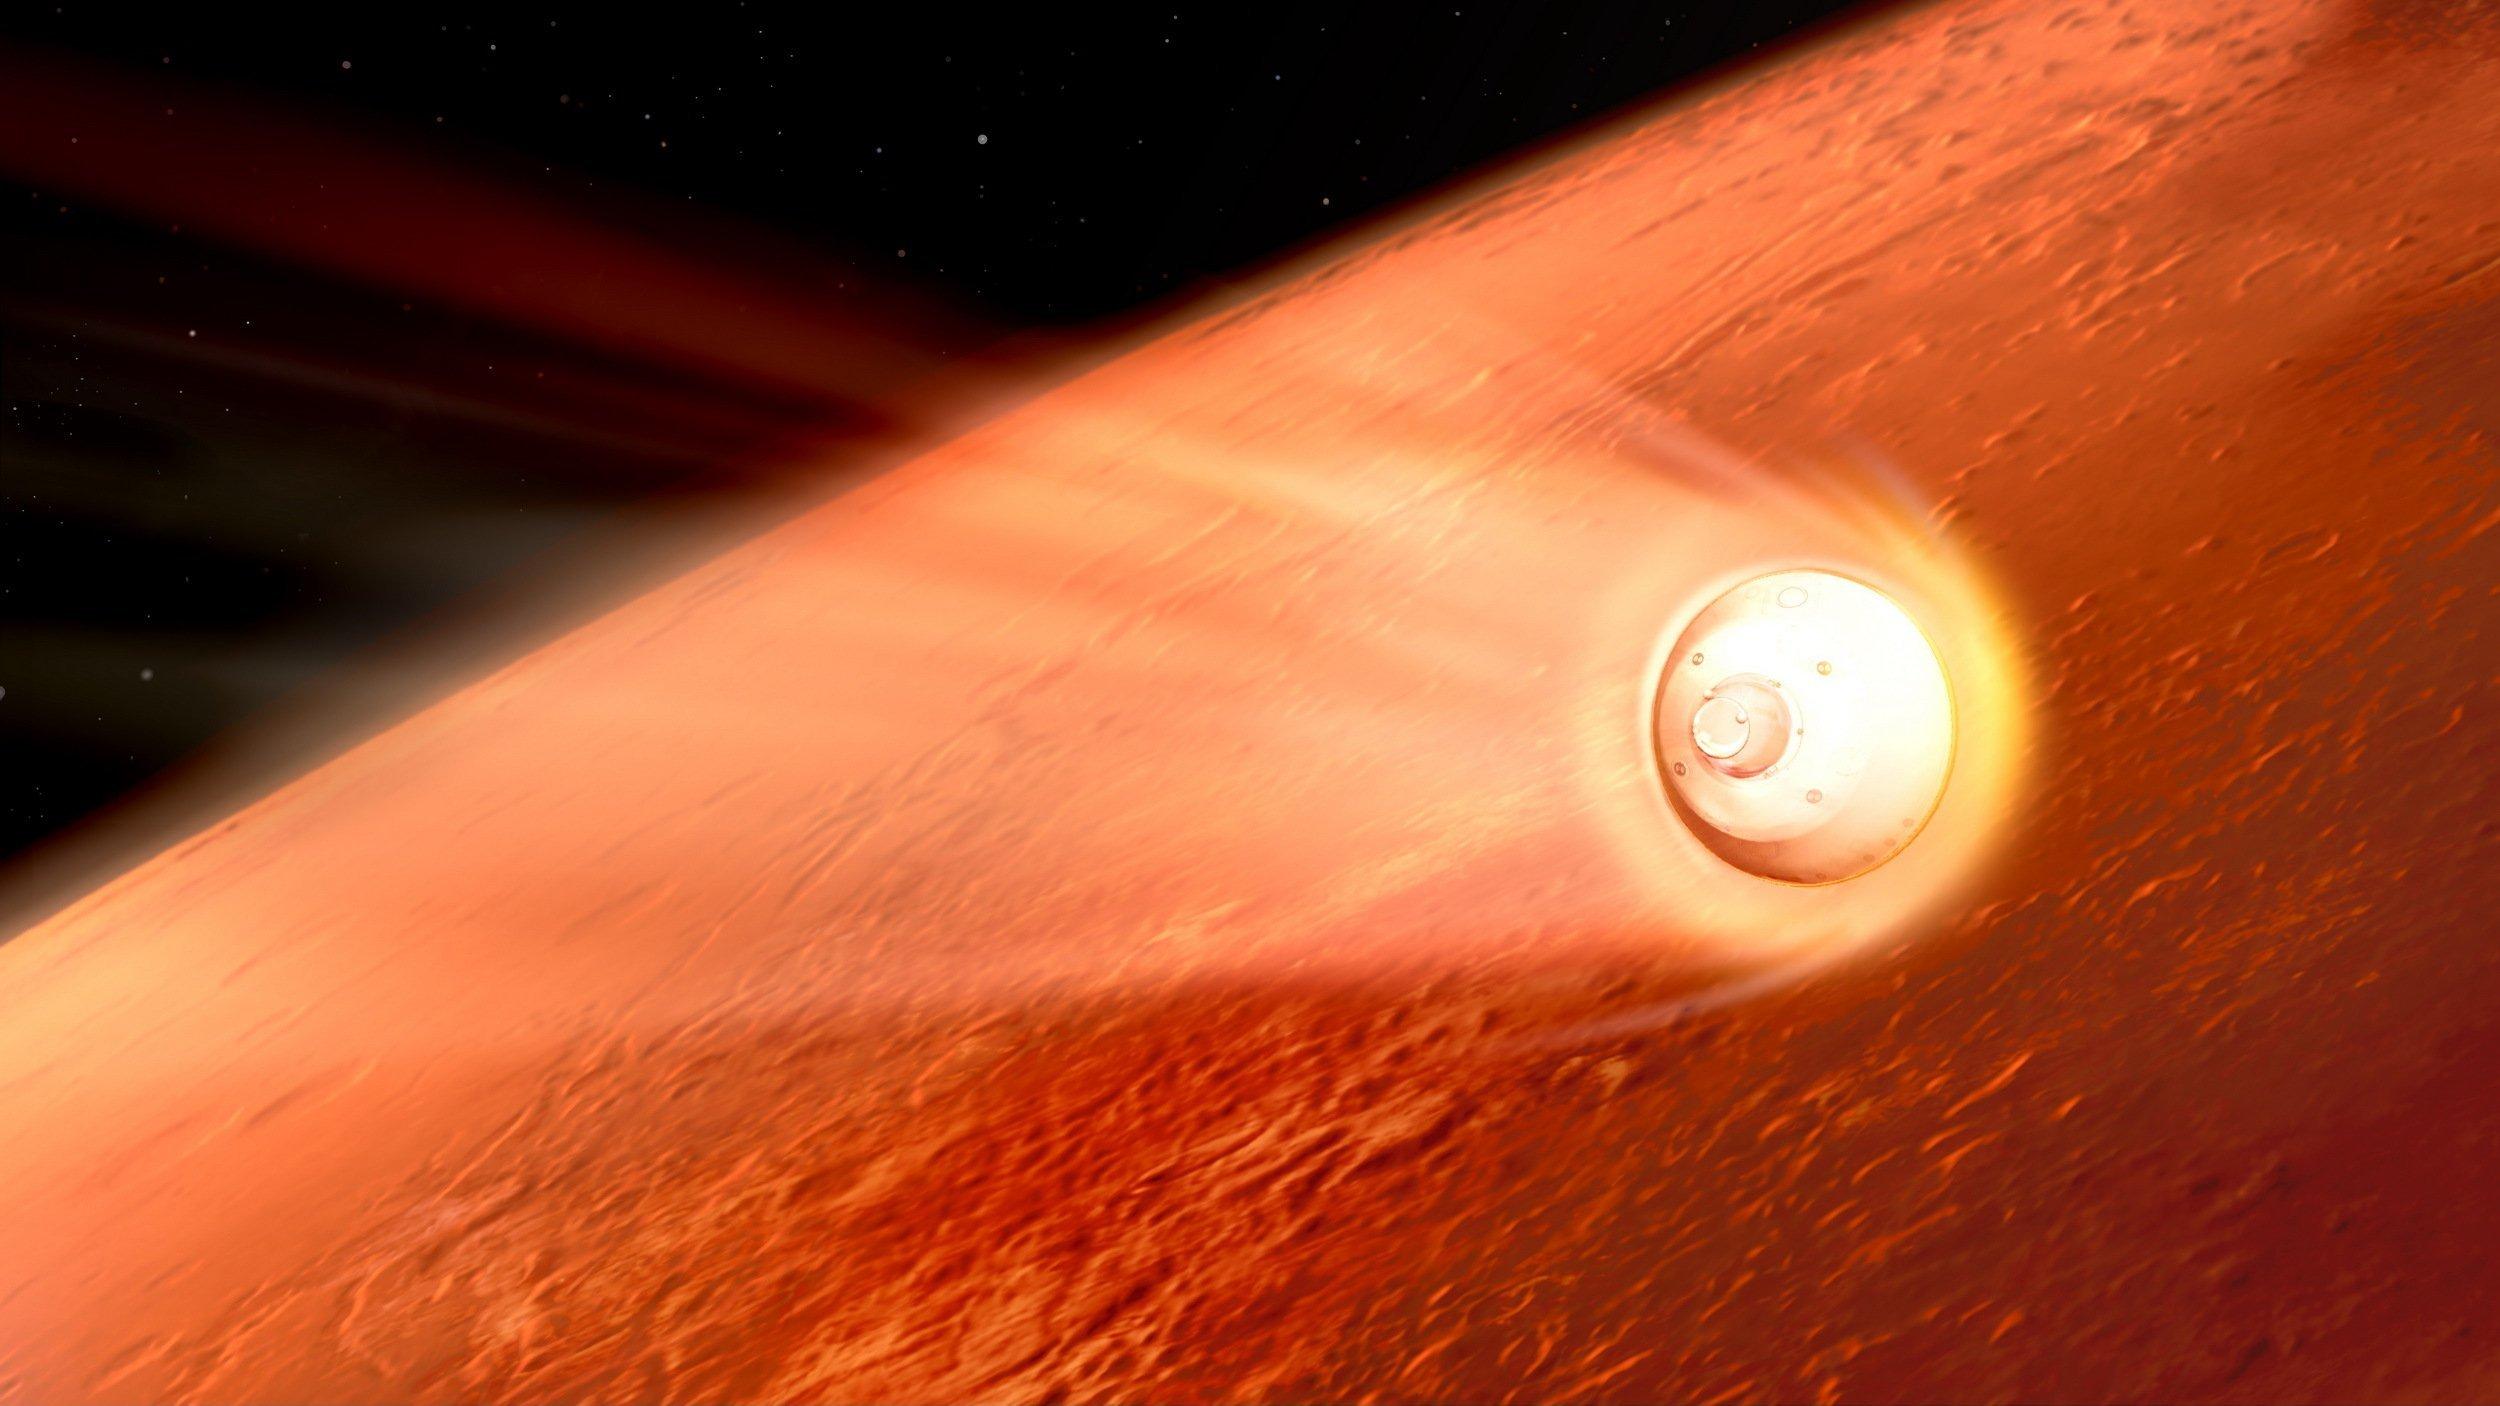 Die künstlerische Darstellung zeigt im Hintergrund einen Ausschnitt des rötlichen Planeten Mars, der zwei Drittel des Bildes einnimmt und sich vor der Schwärze des Weltalls oben links abhebt. Im Vordergrund rast von links kommend die helle Landekapsel einer Raumsonde Richtung Marsoberfläche und zieht dabei einen Schweif erhitzter Gase als Leuchtspur hinter sich her.